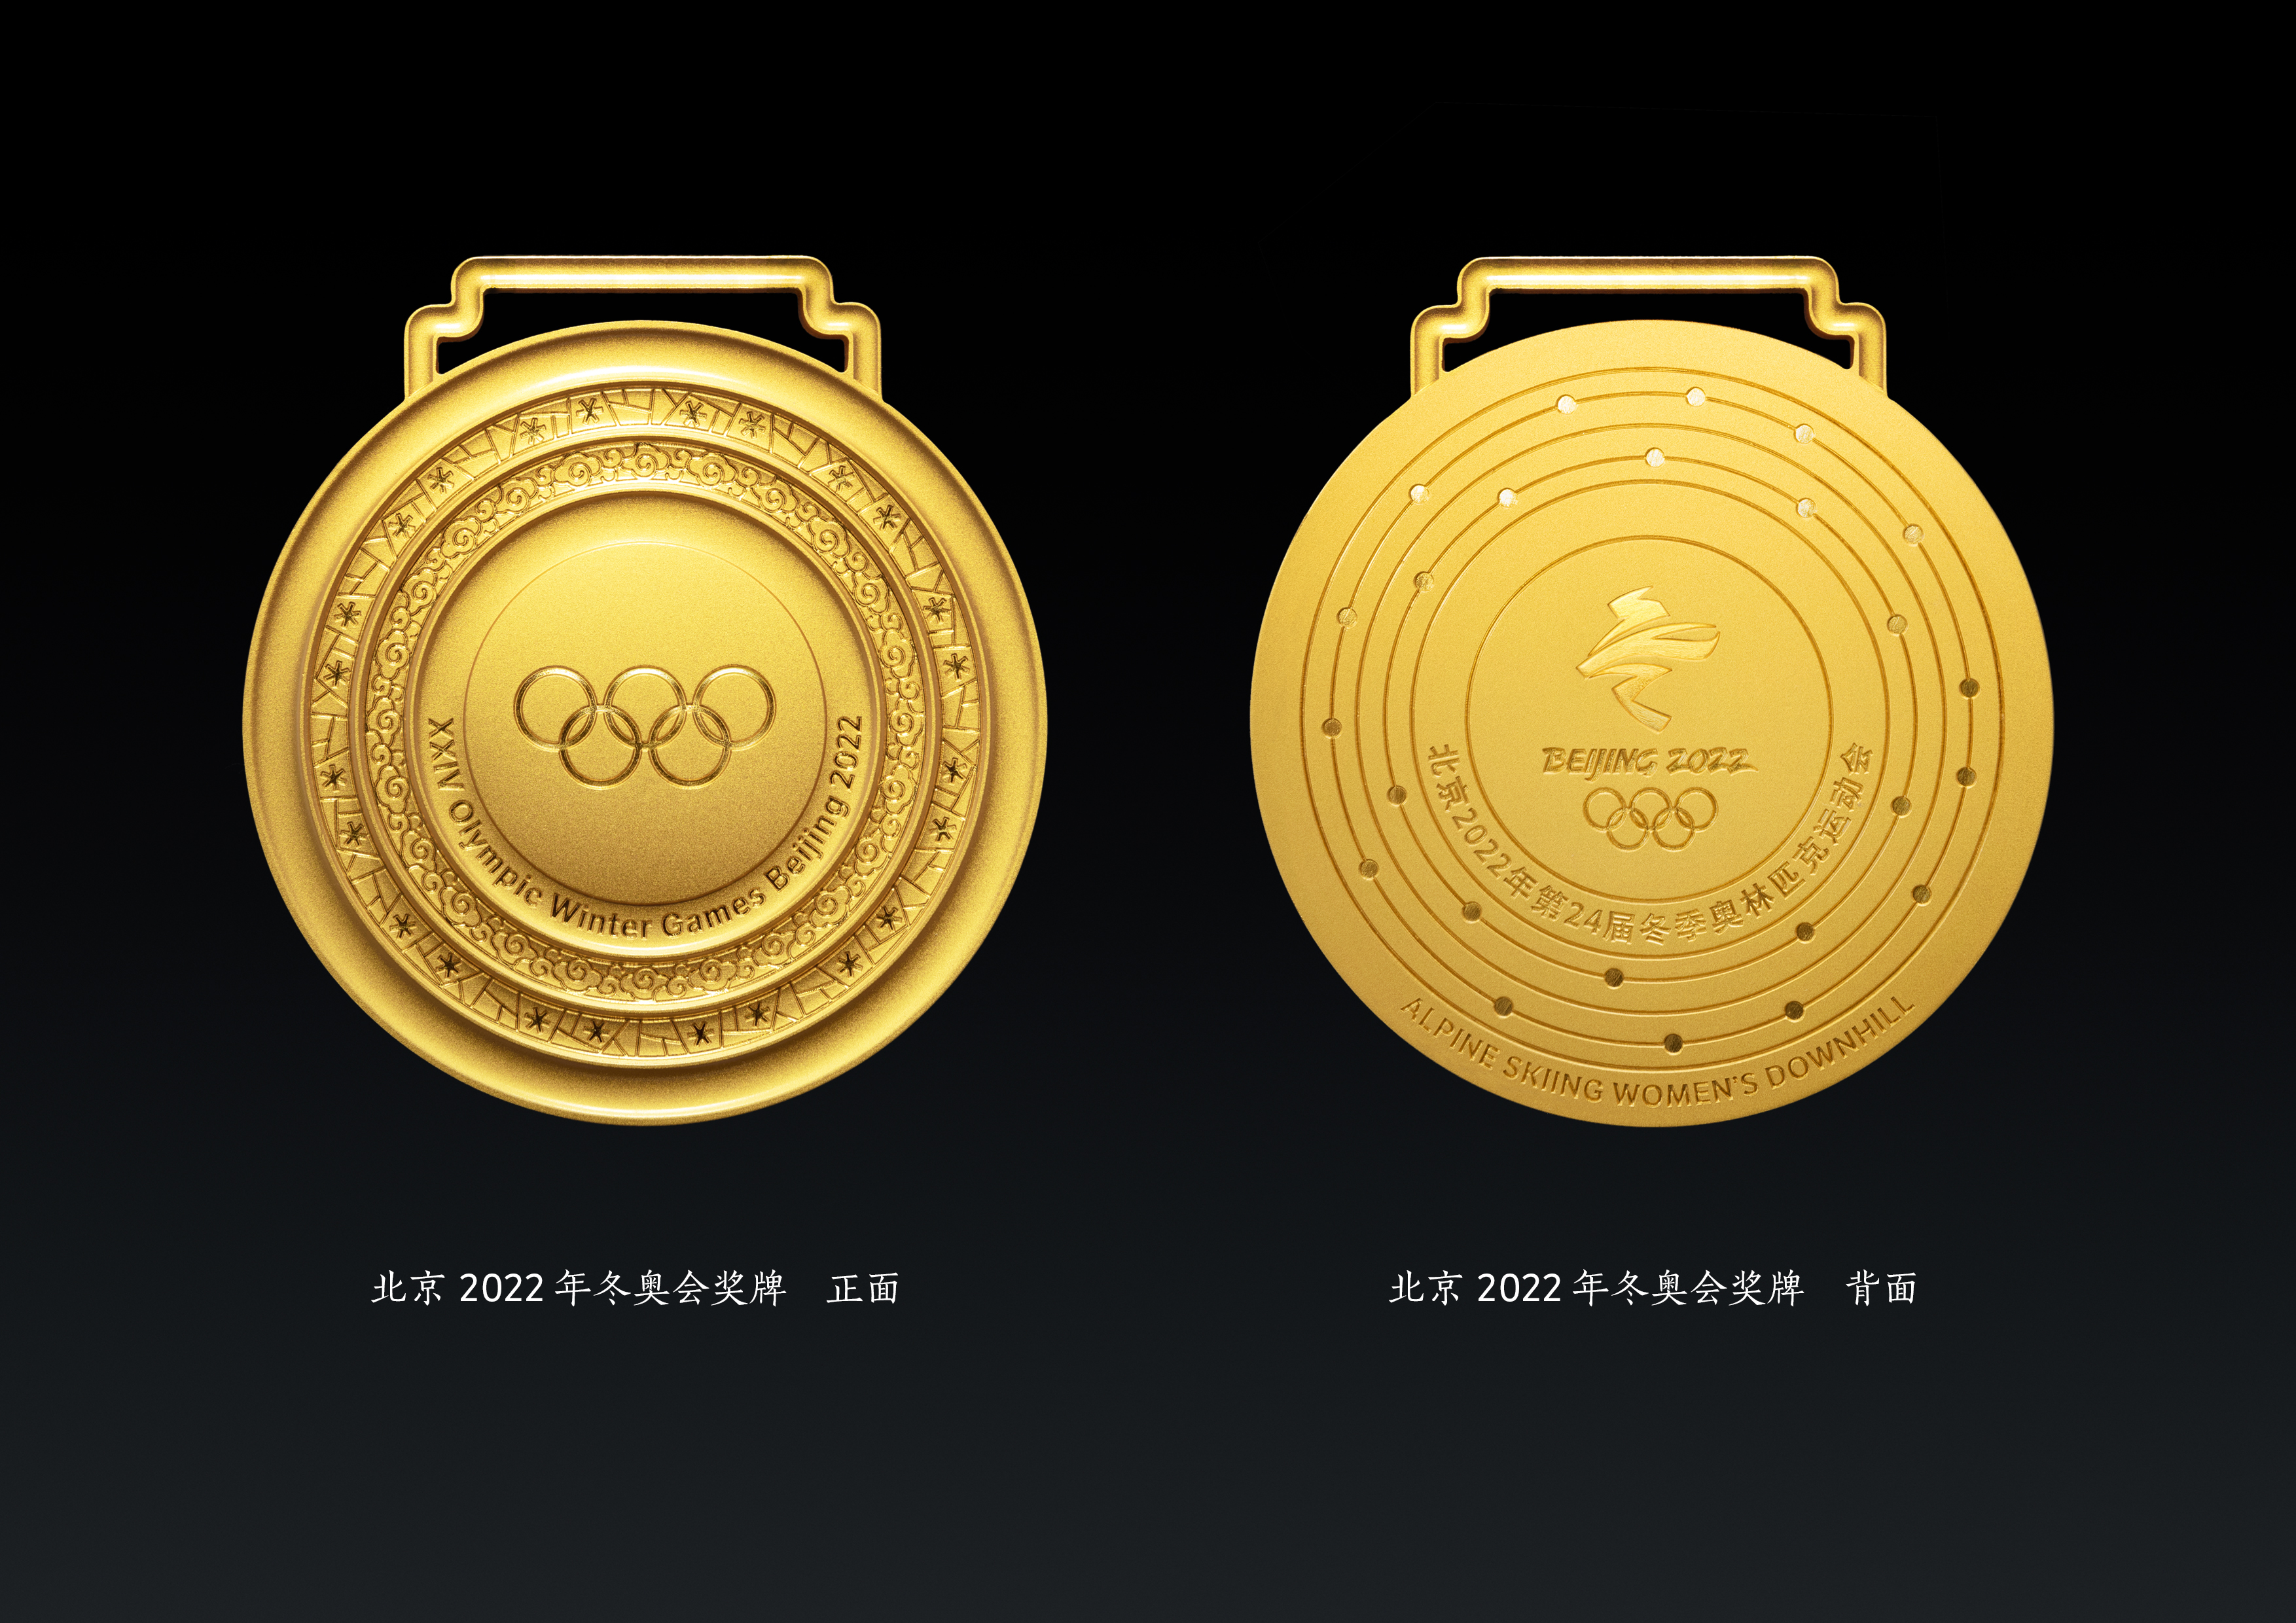 北京冬奥会与冬残奥会奖牌发布 形象来源于中国古代同心圆玉璧